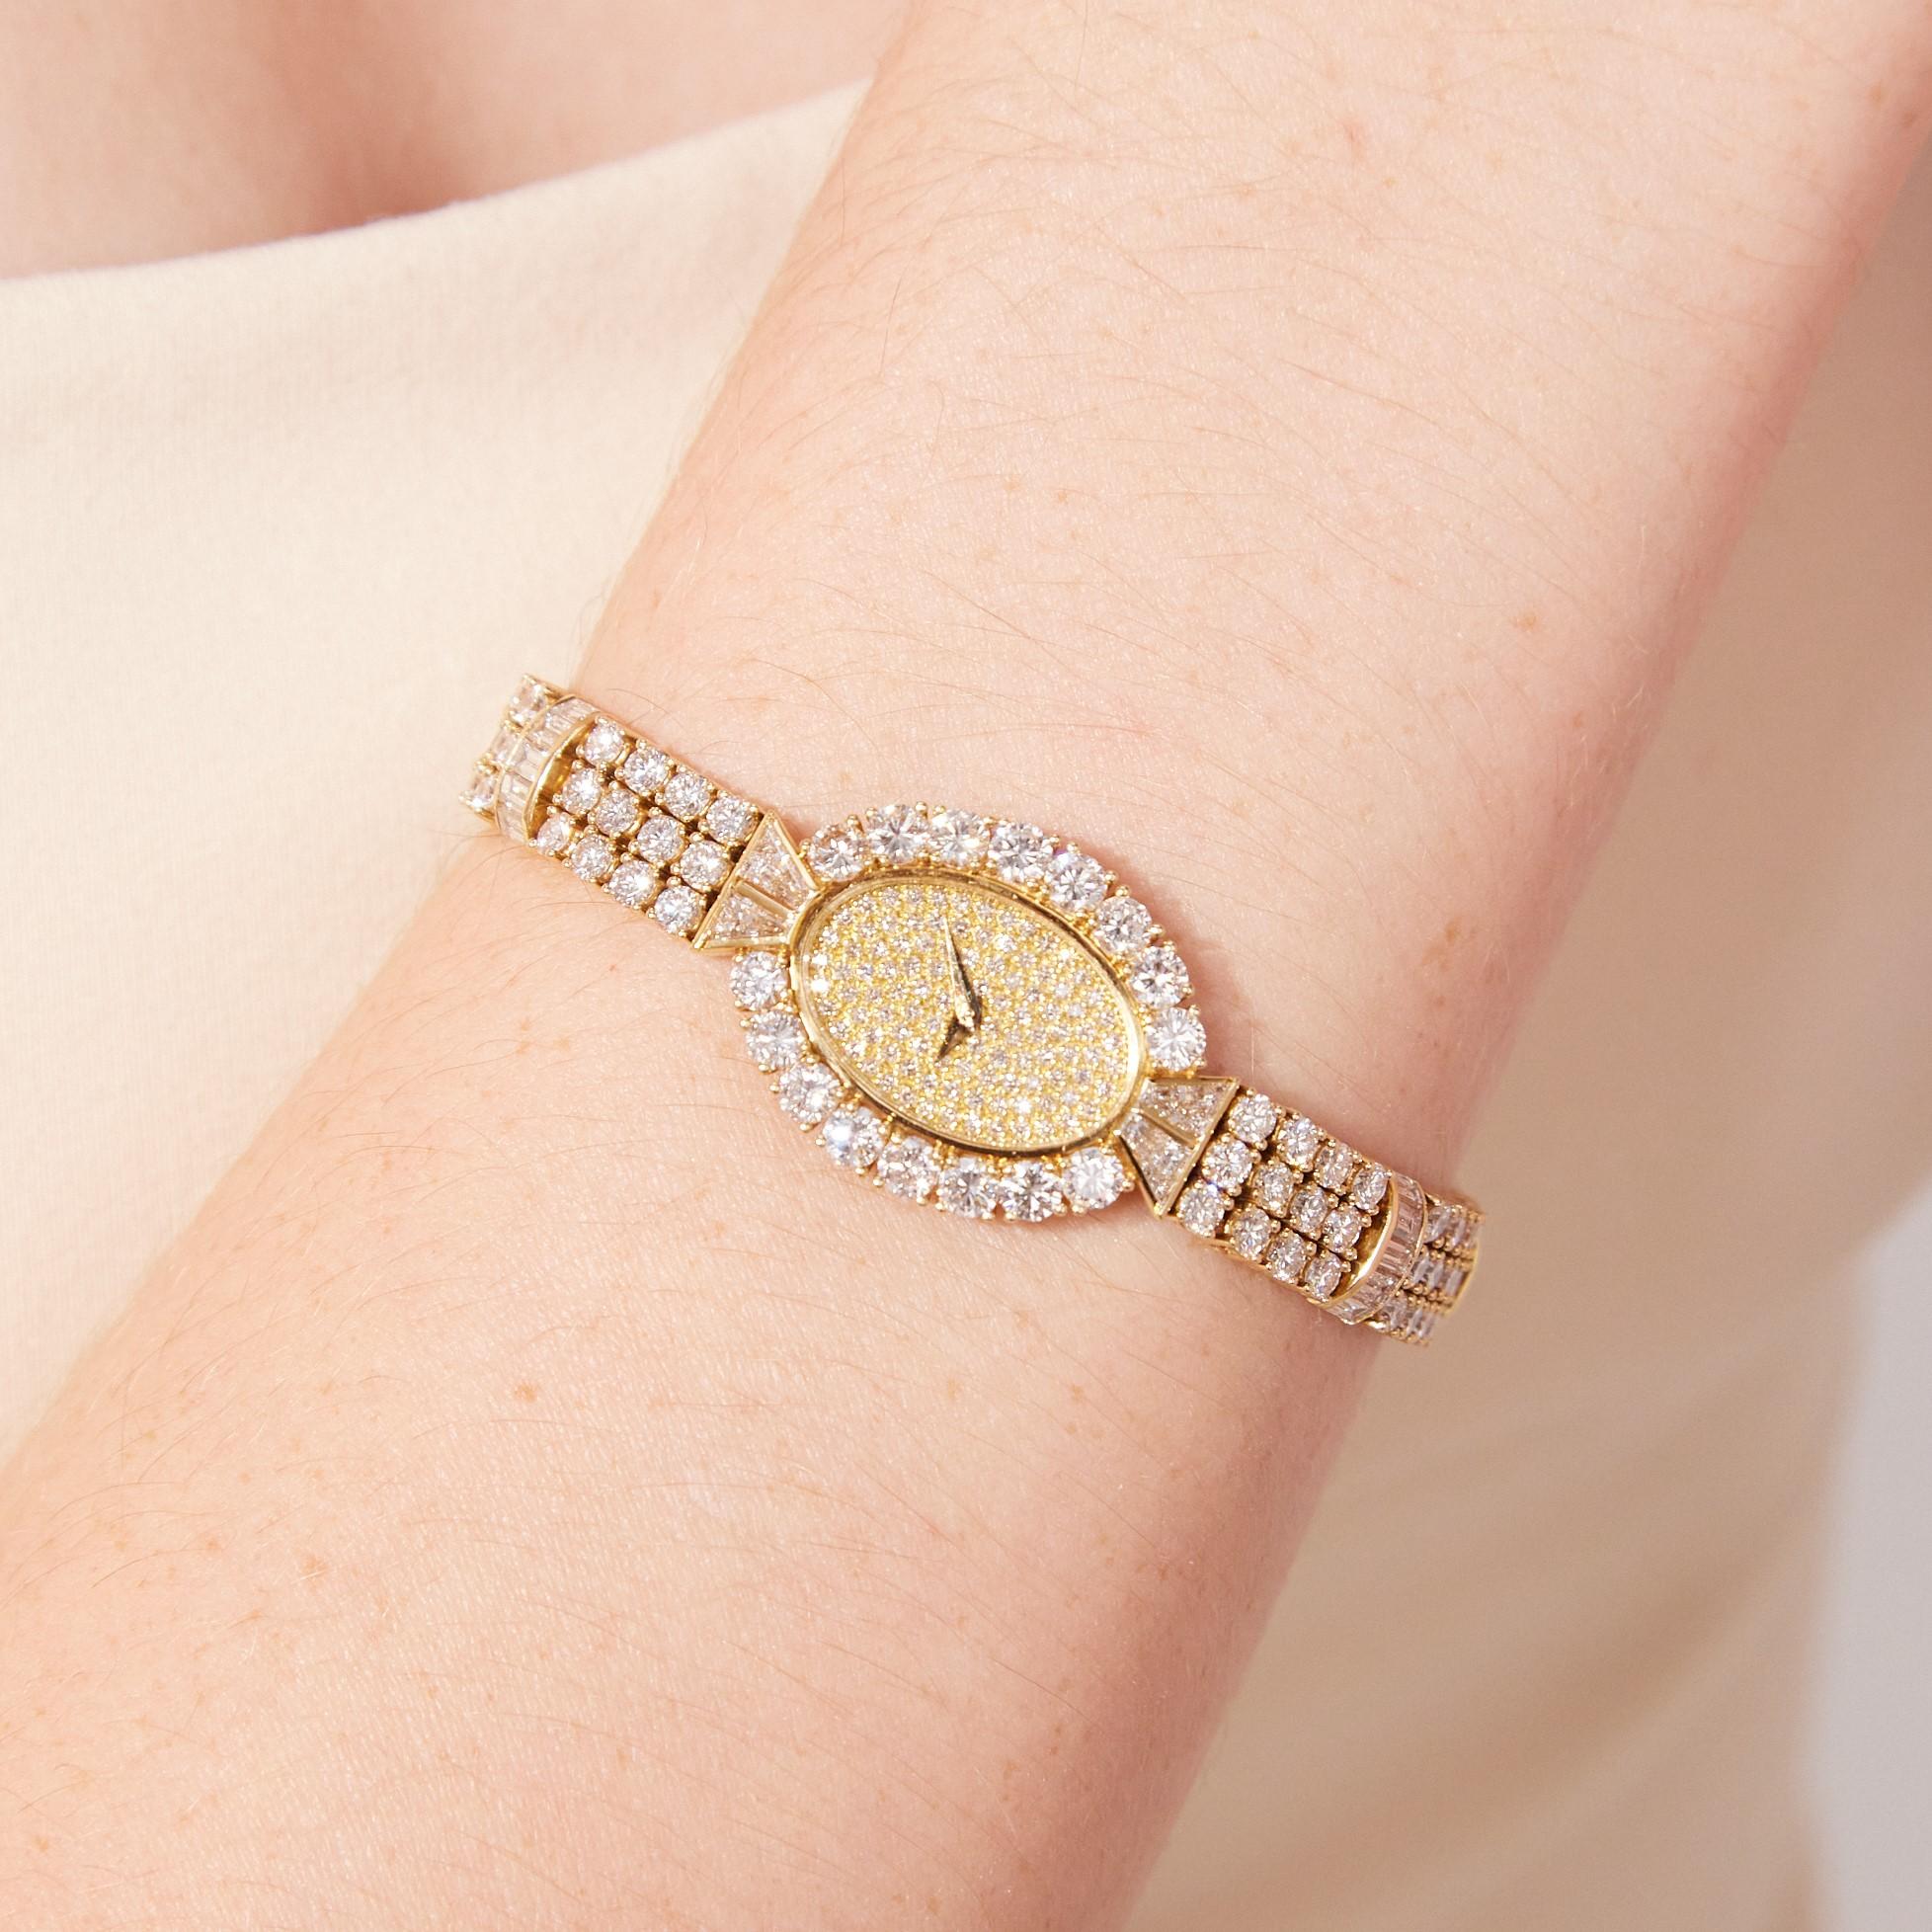 Die hervorragende Vacheron Constantin Geneve Damen-Diamant-Armbanduhr ist ein sehr feines und seltenes Stück von der ältesten und einer der angesehensten Uhrenmanufakturen der Schweiz. Die Uhr ist mit rund 14 Karat spektakulär leuchtenden weißen